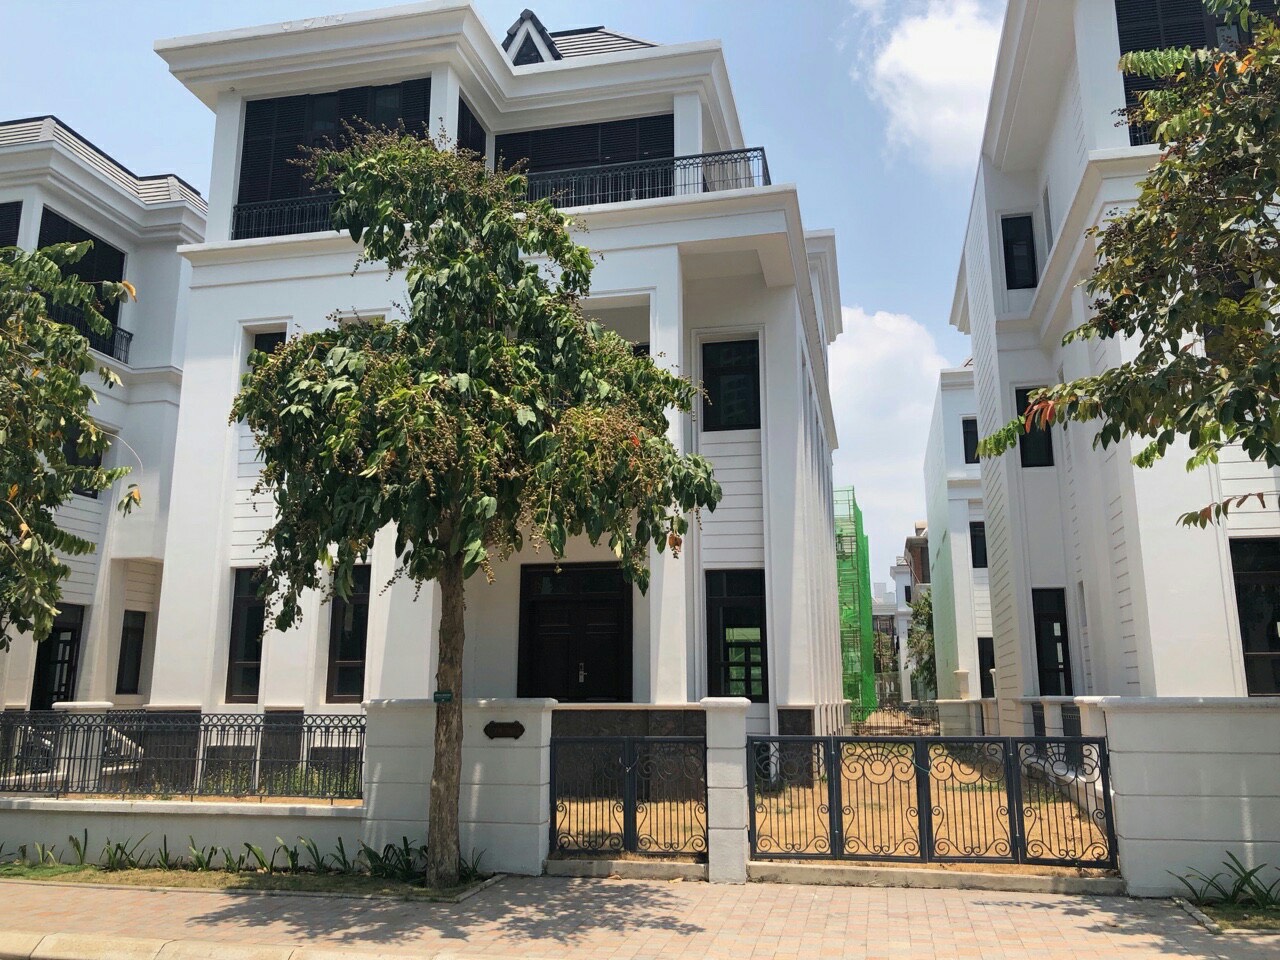 Bán Căn Biệt thự VinHome Nằm trên đường Nguyễn Hữu Cảnh và Điện Biên Phủ, Thô giá 75 tỷ